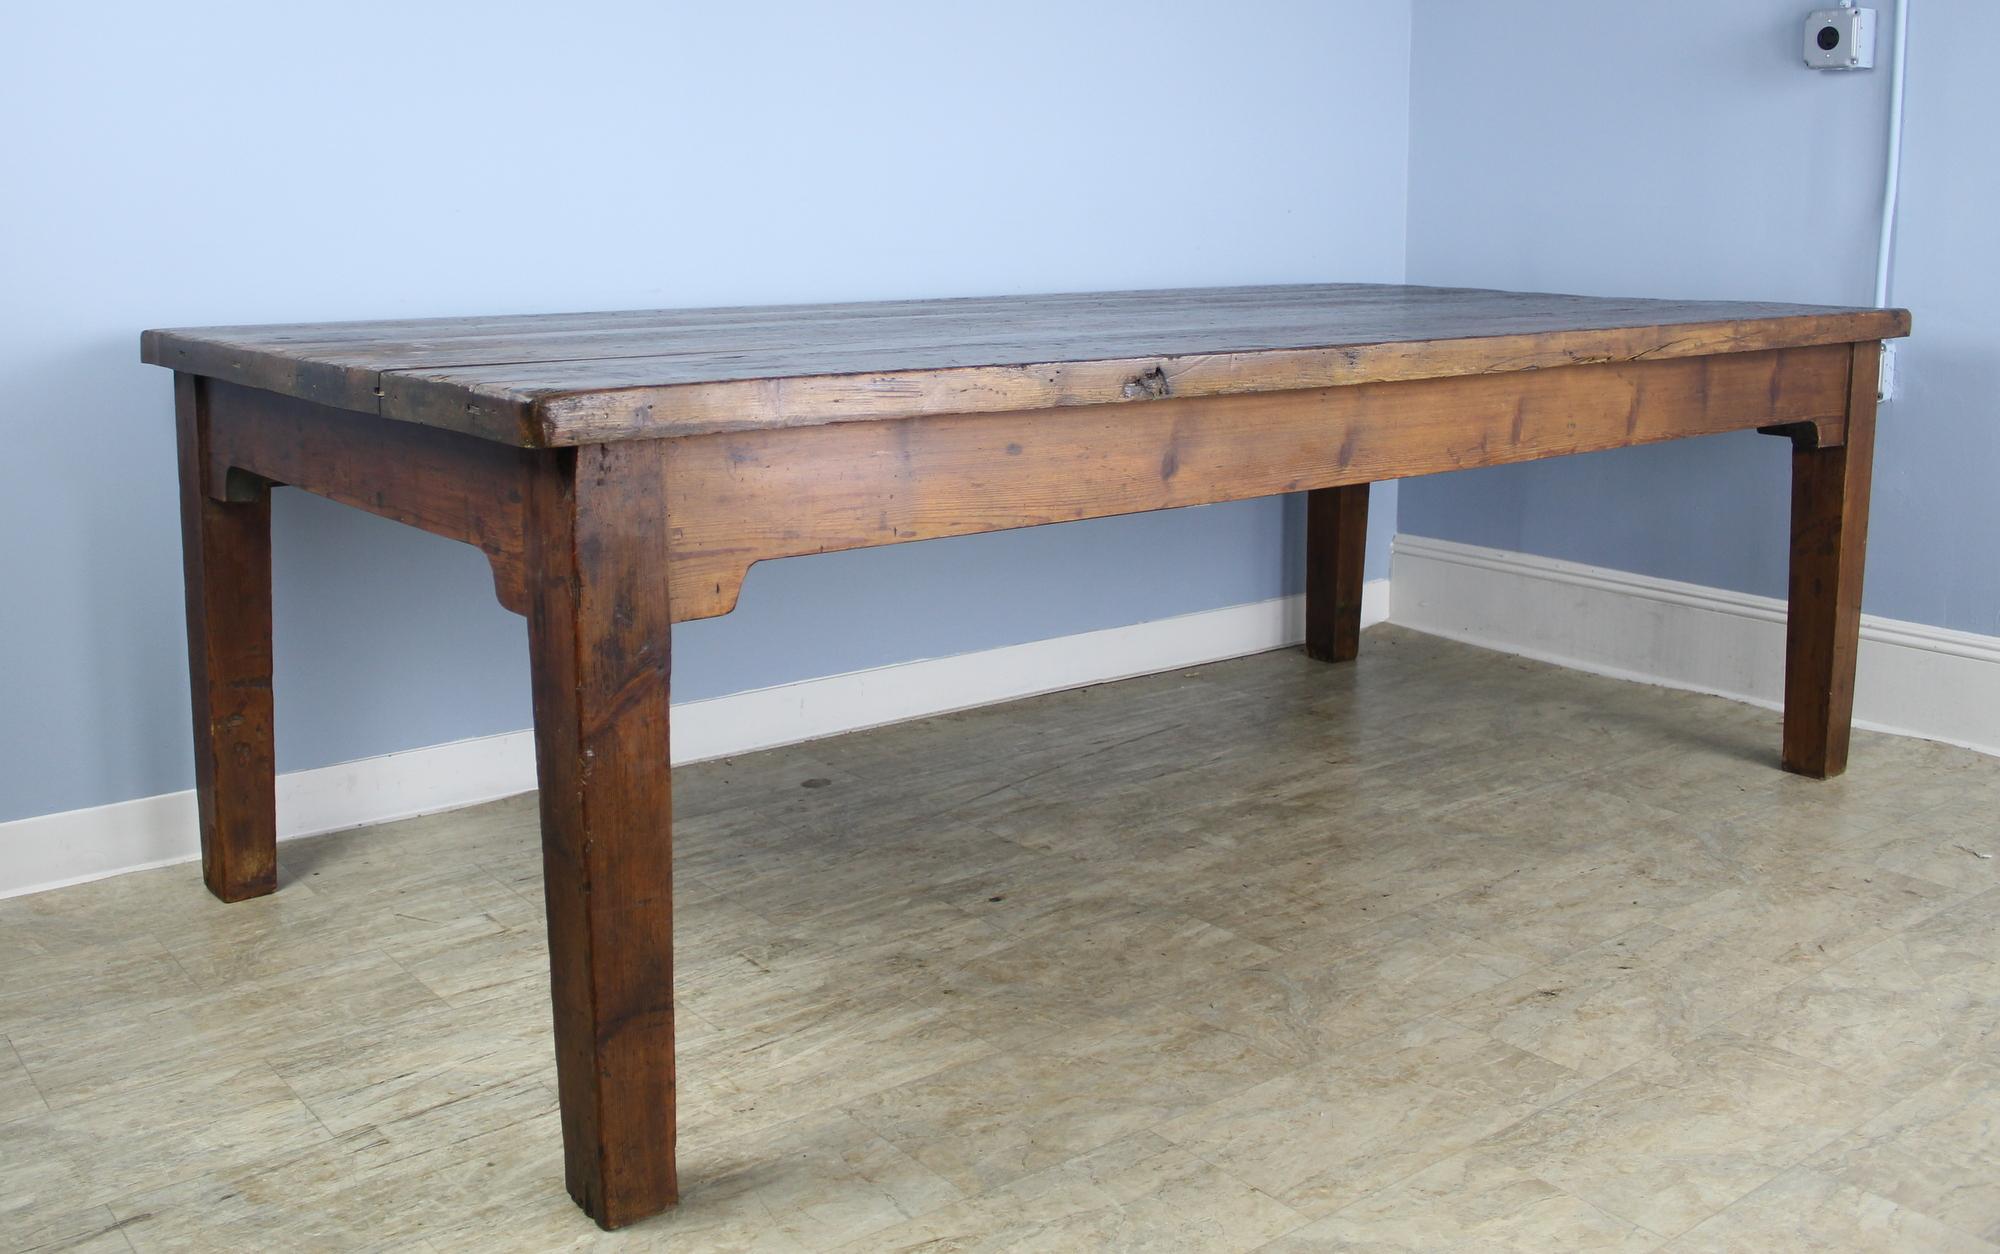 A spectacular pine farm table, with a 1.75